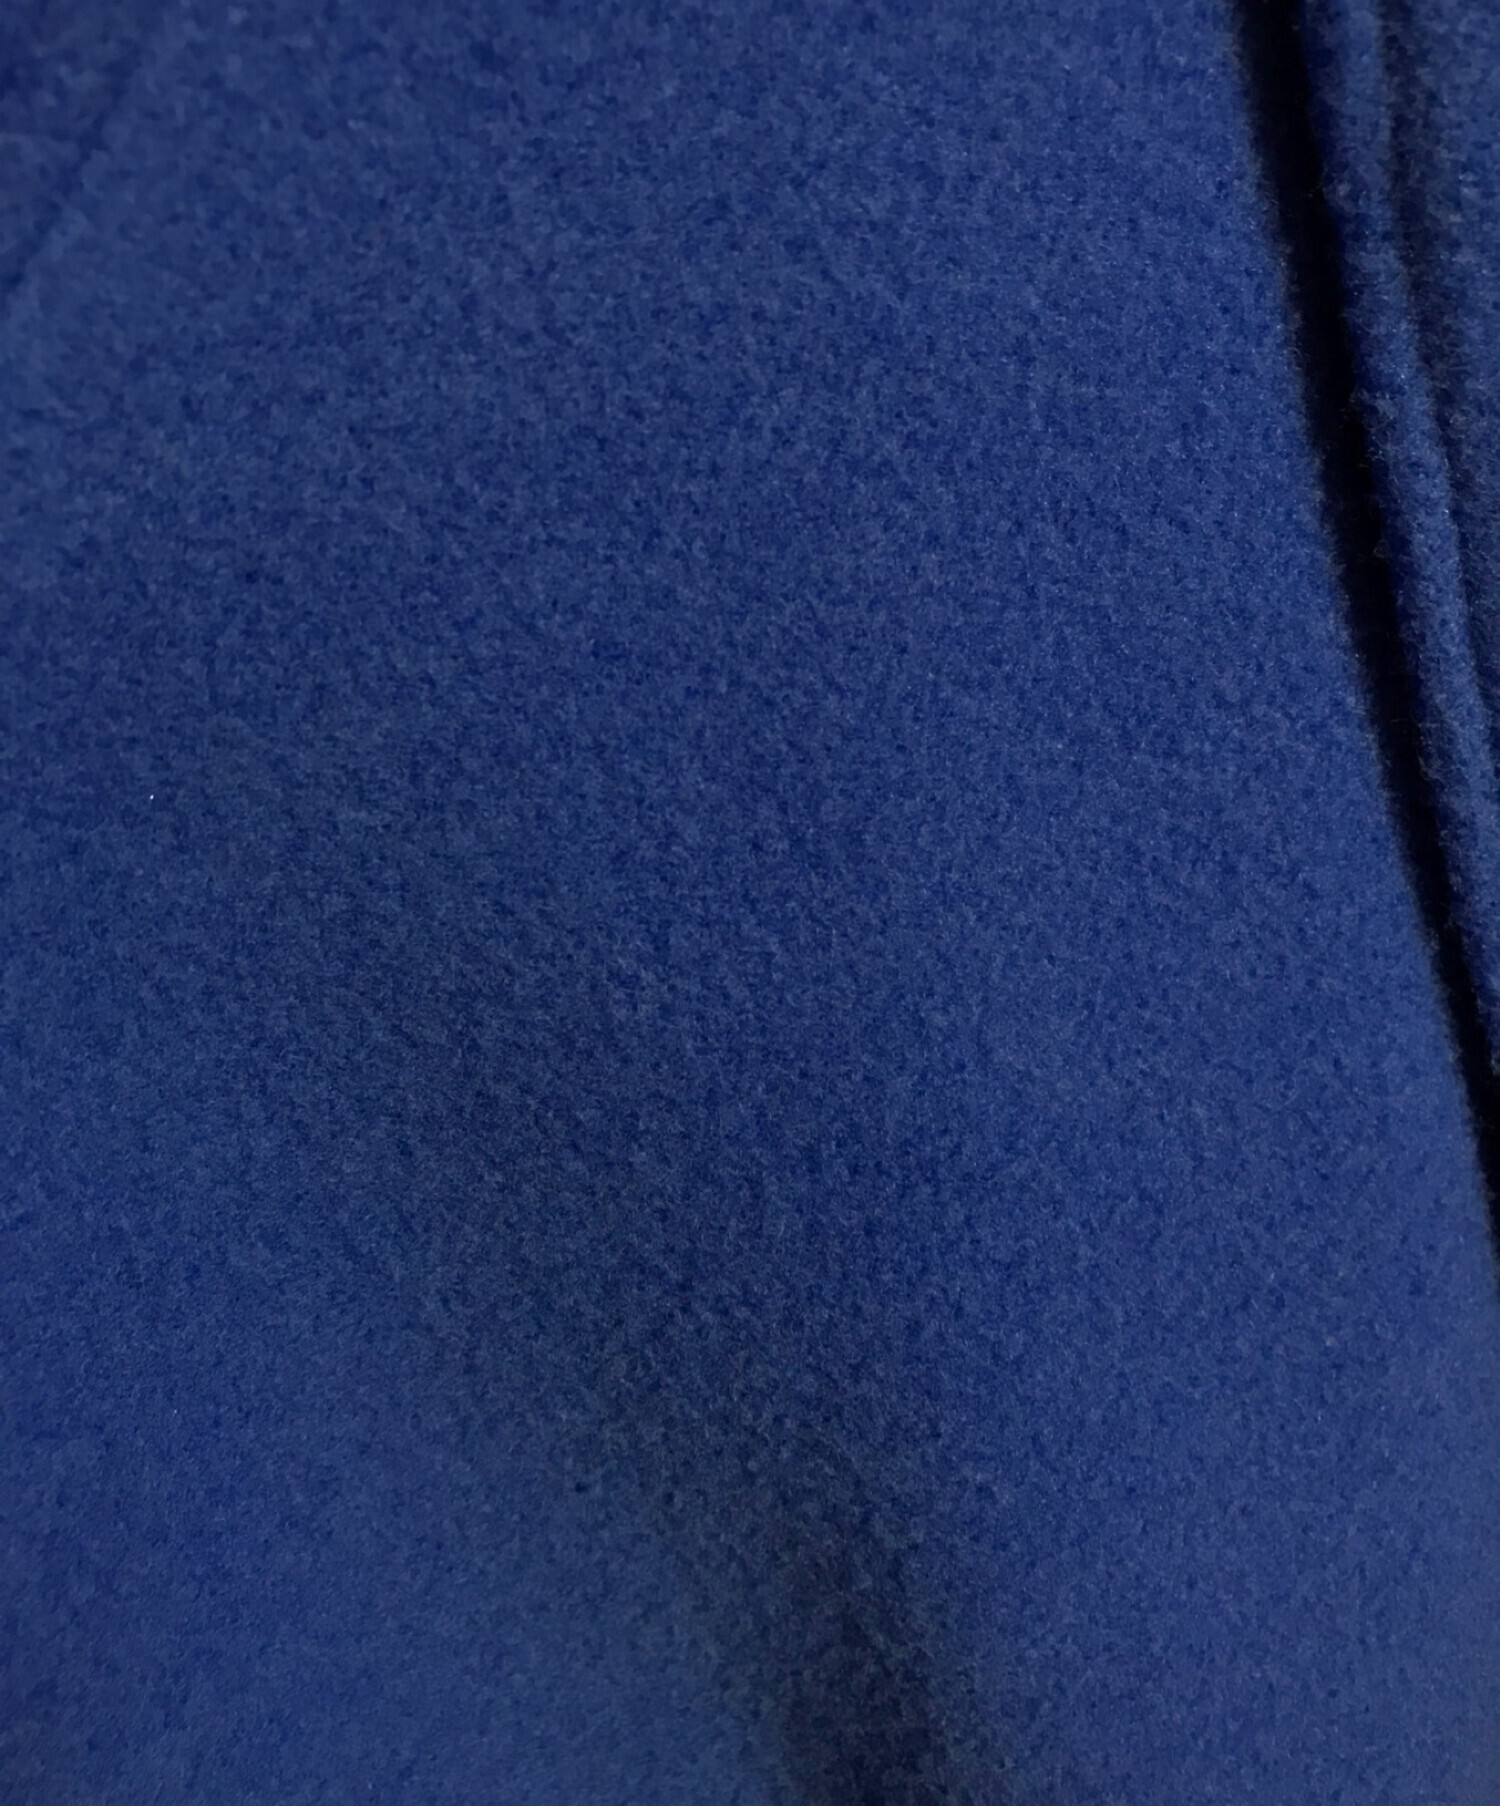 MAISON SPECIAL (メゾンスペシャル) スーパー100メルトンルーズコート ブルー サイズ:SIZE36